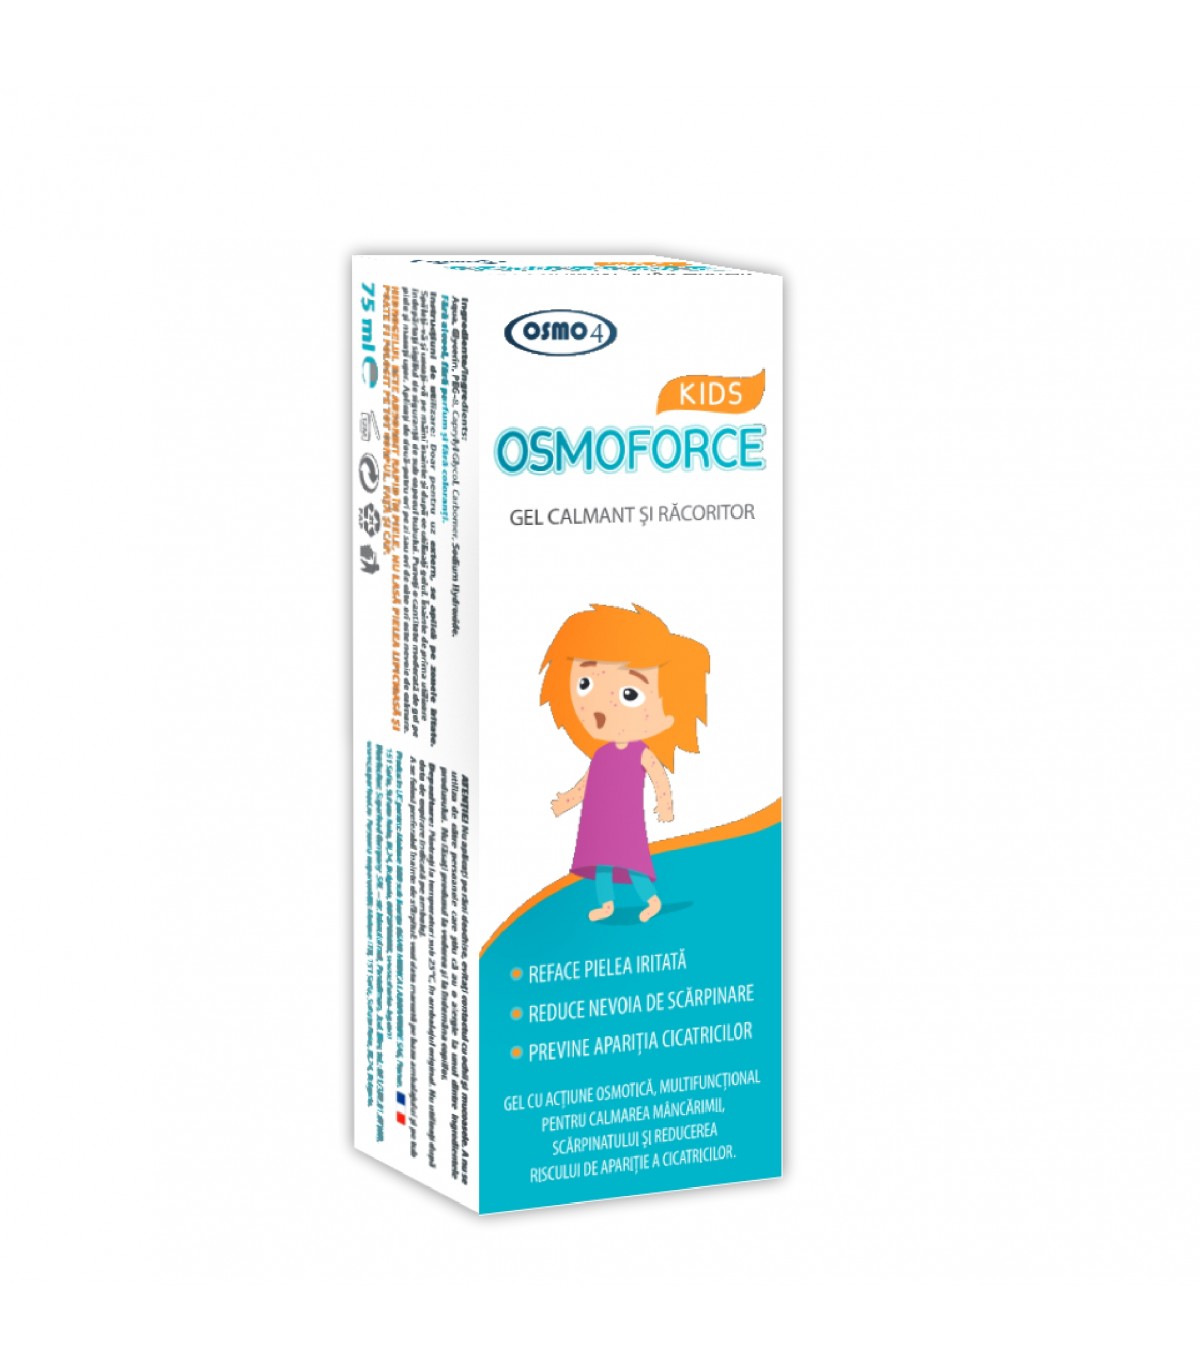 Osmoforce Kids gel calmant,racoritor x75ml